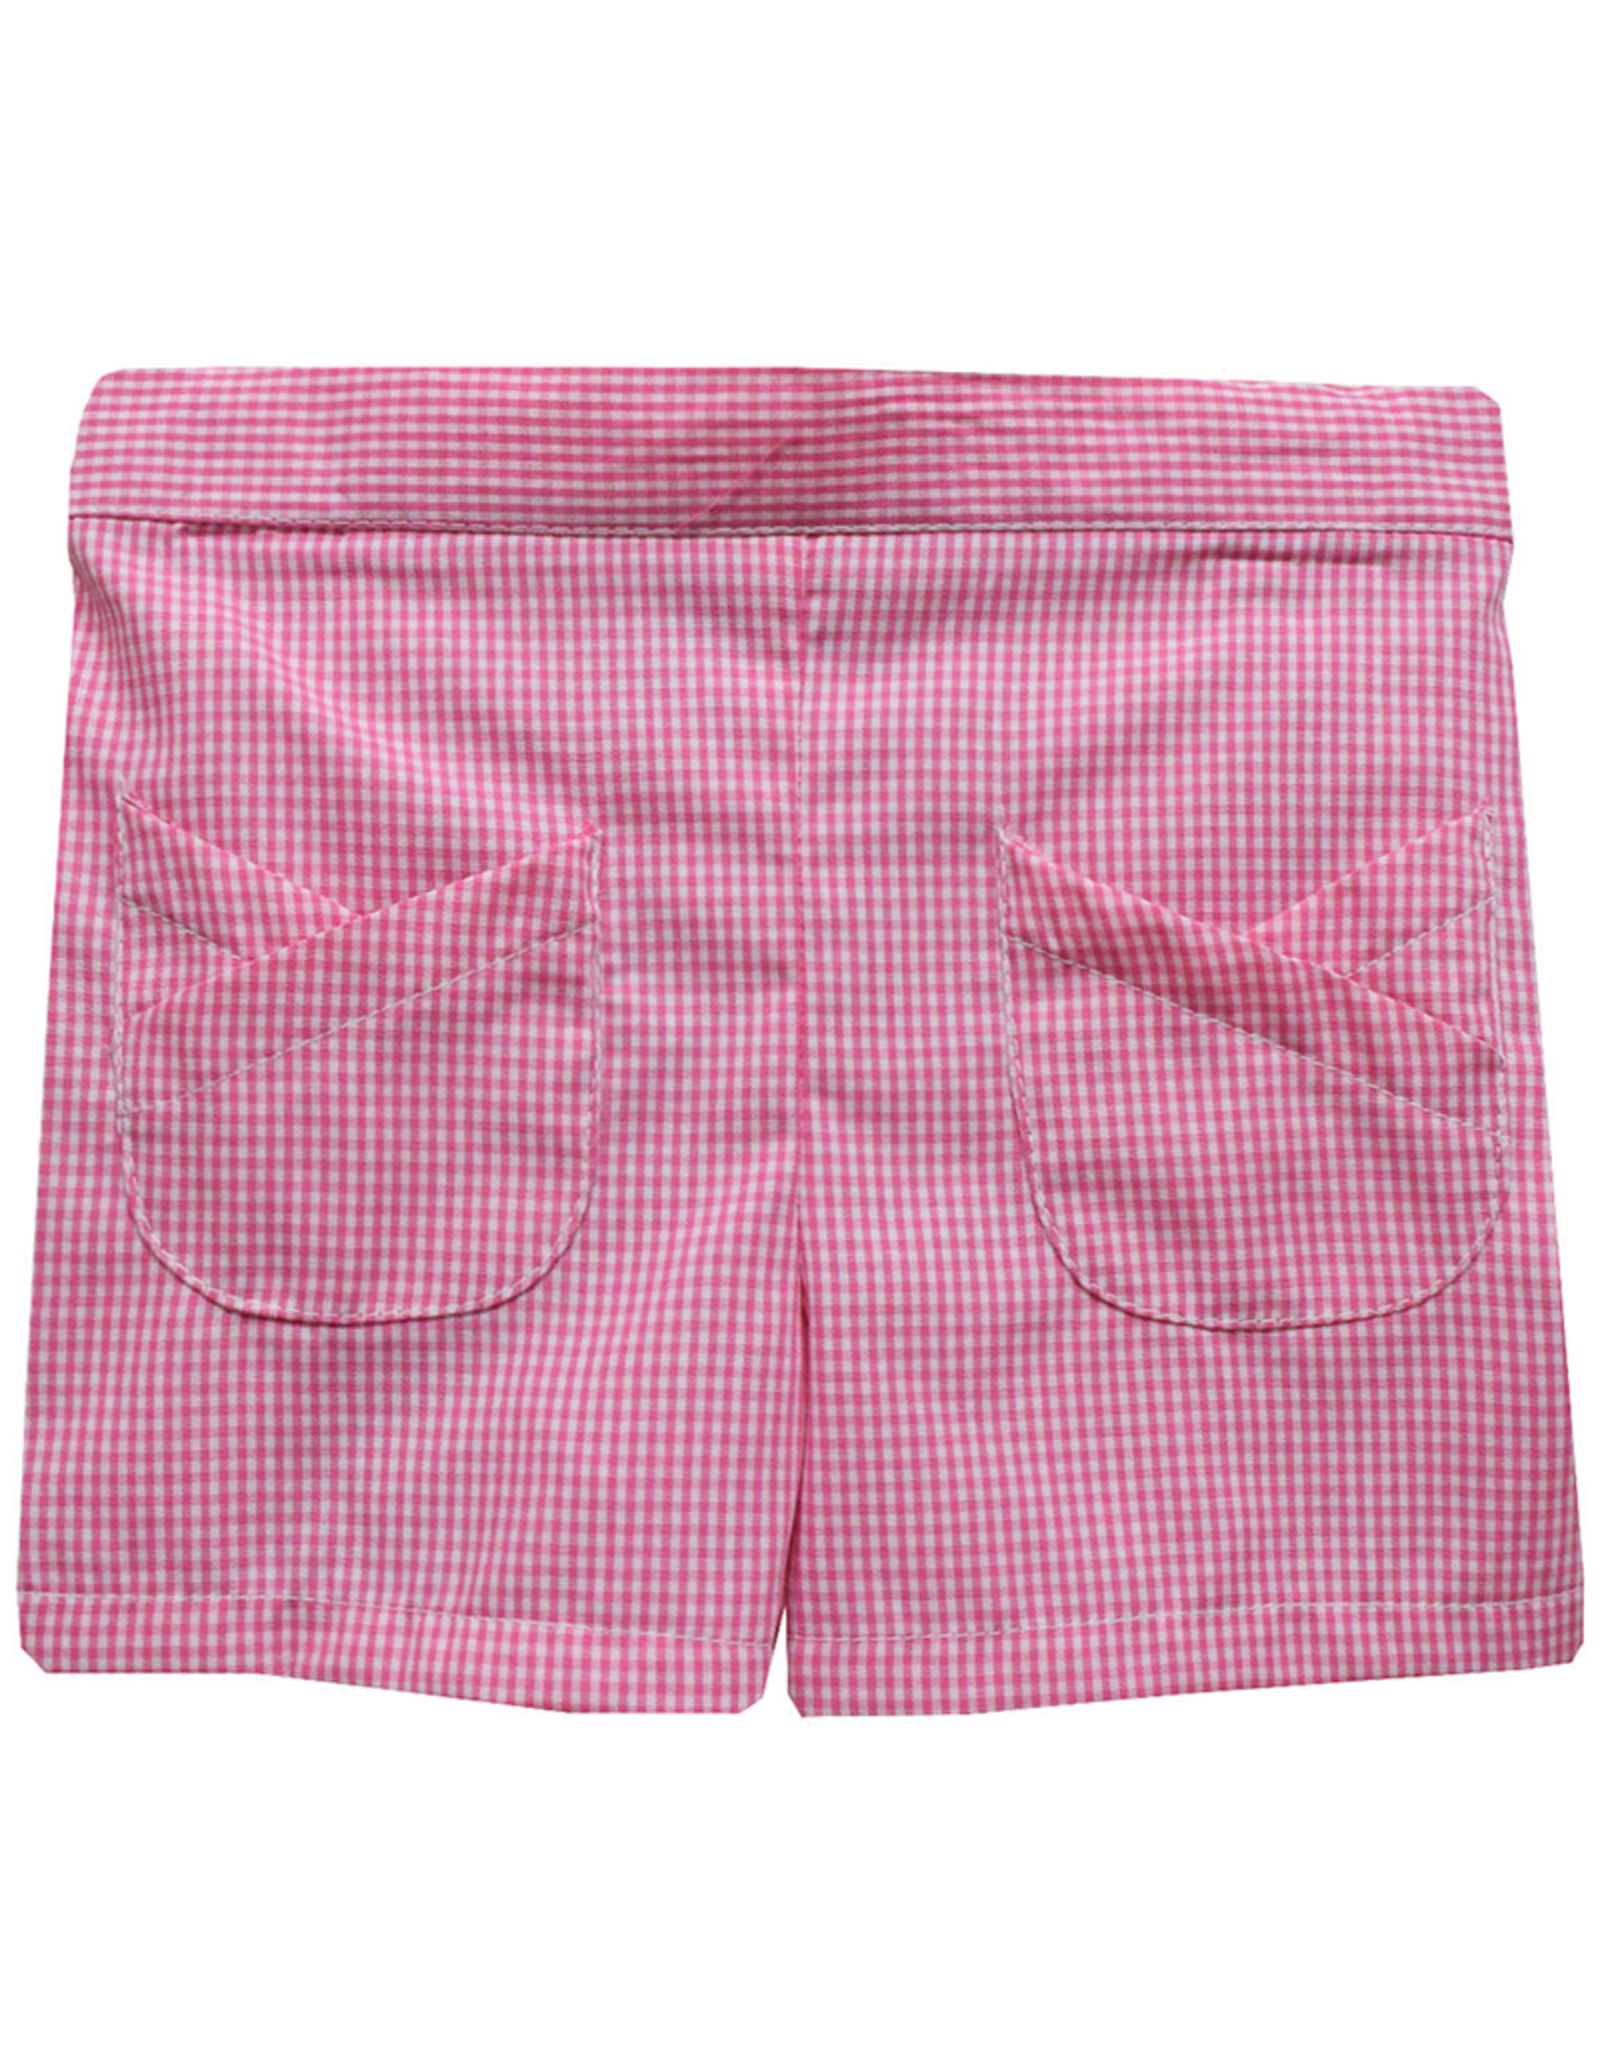 Vive la Fete VFS24 Candy Pink Gingham Tulip Pocket Short